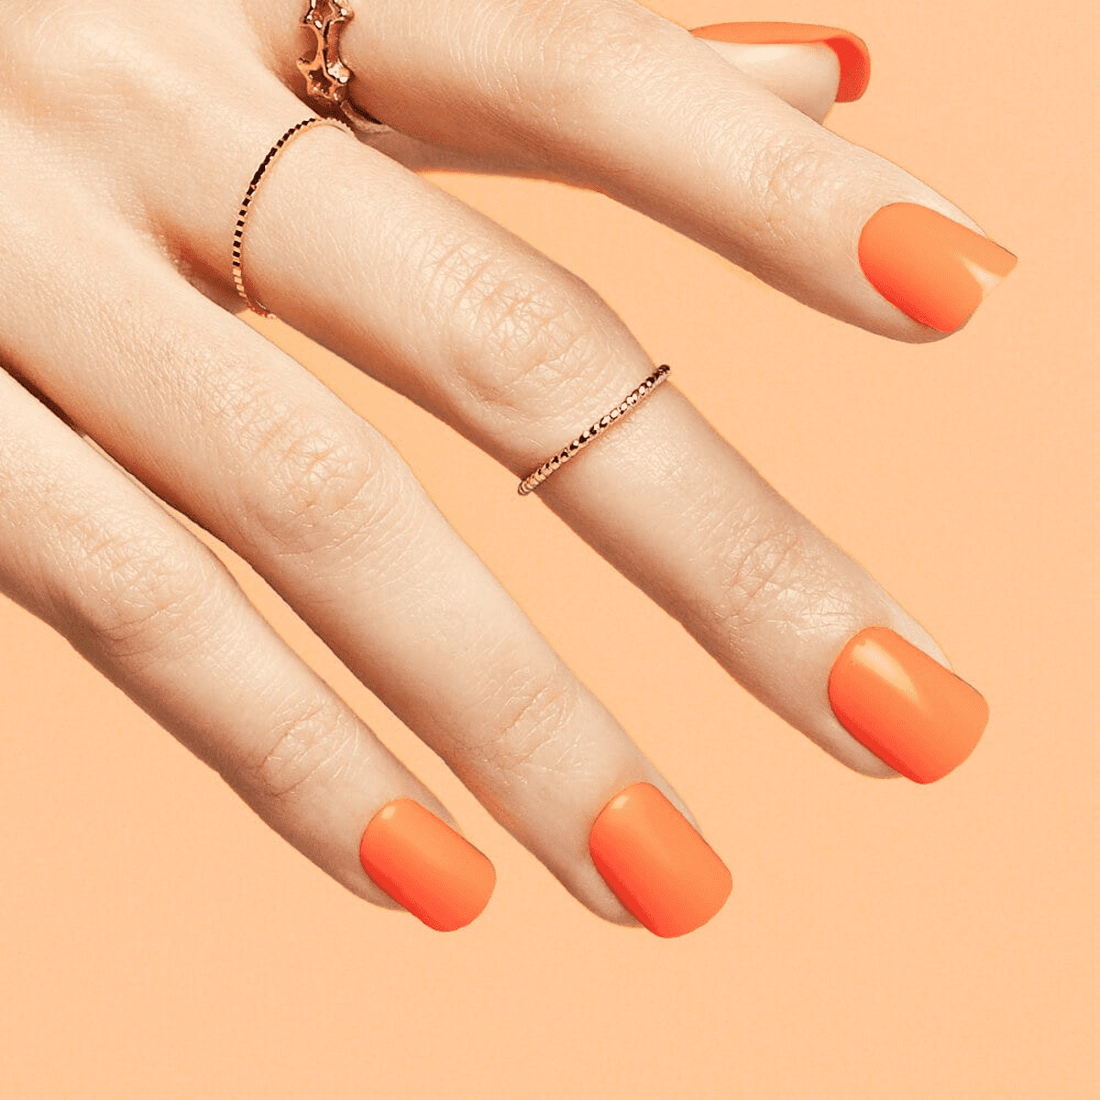 imPRESS Color Press-On Manicure - Orange Squeeze